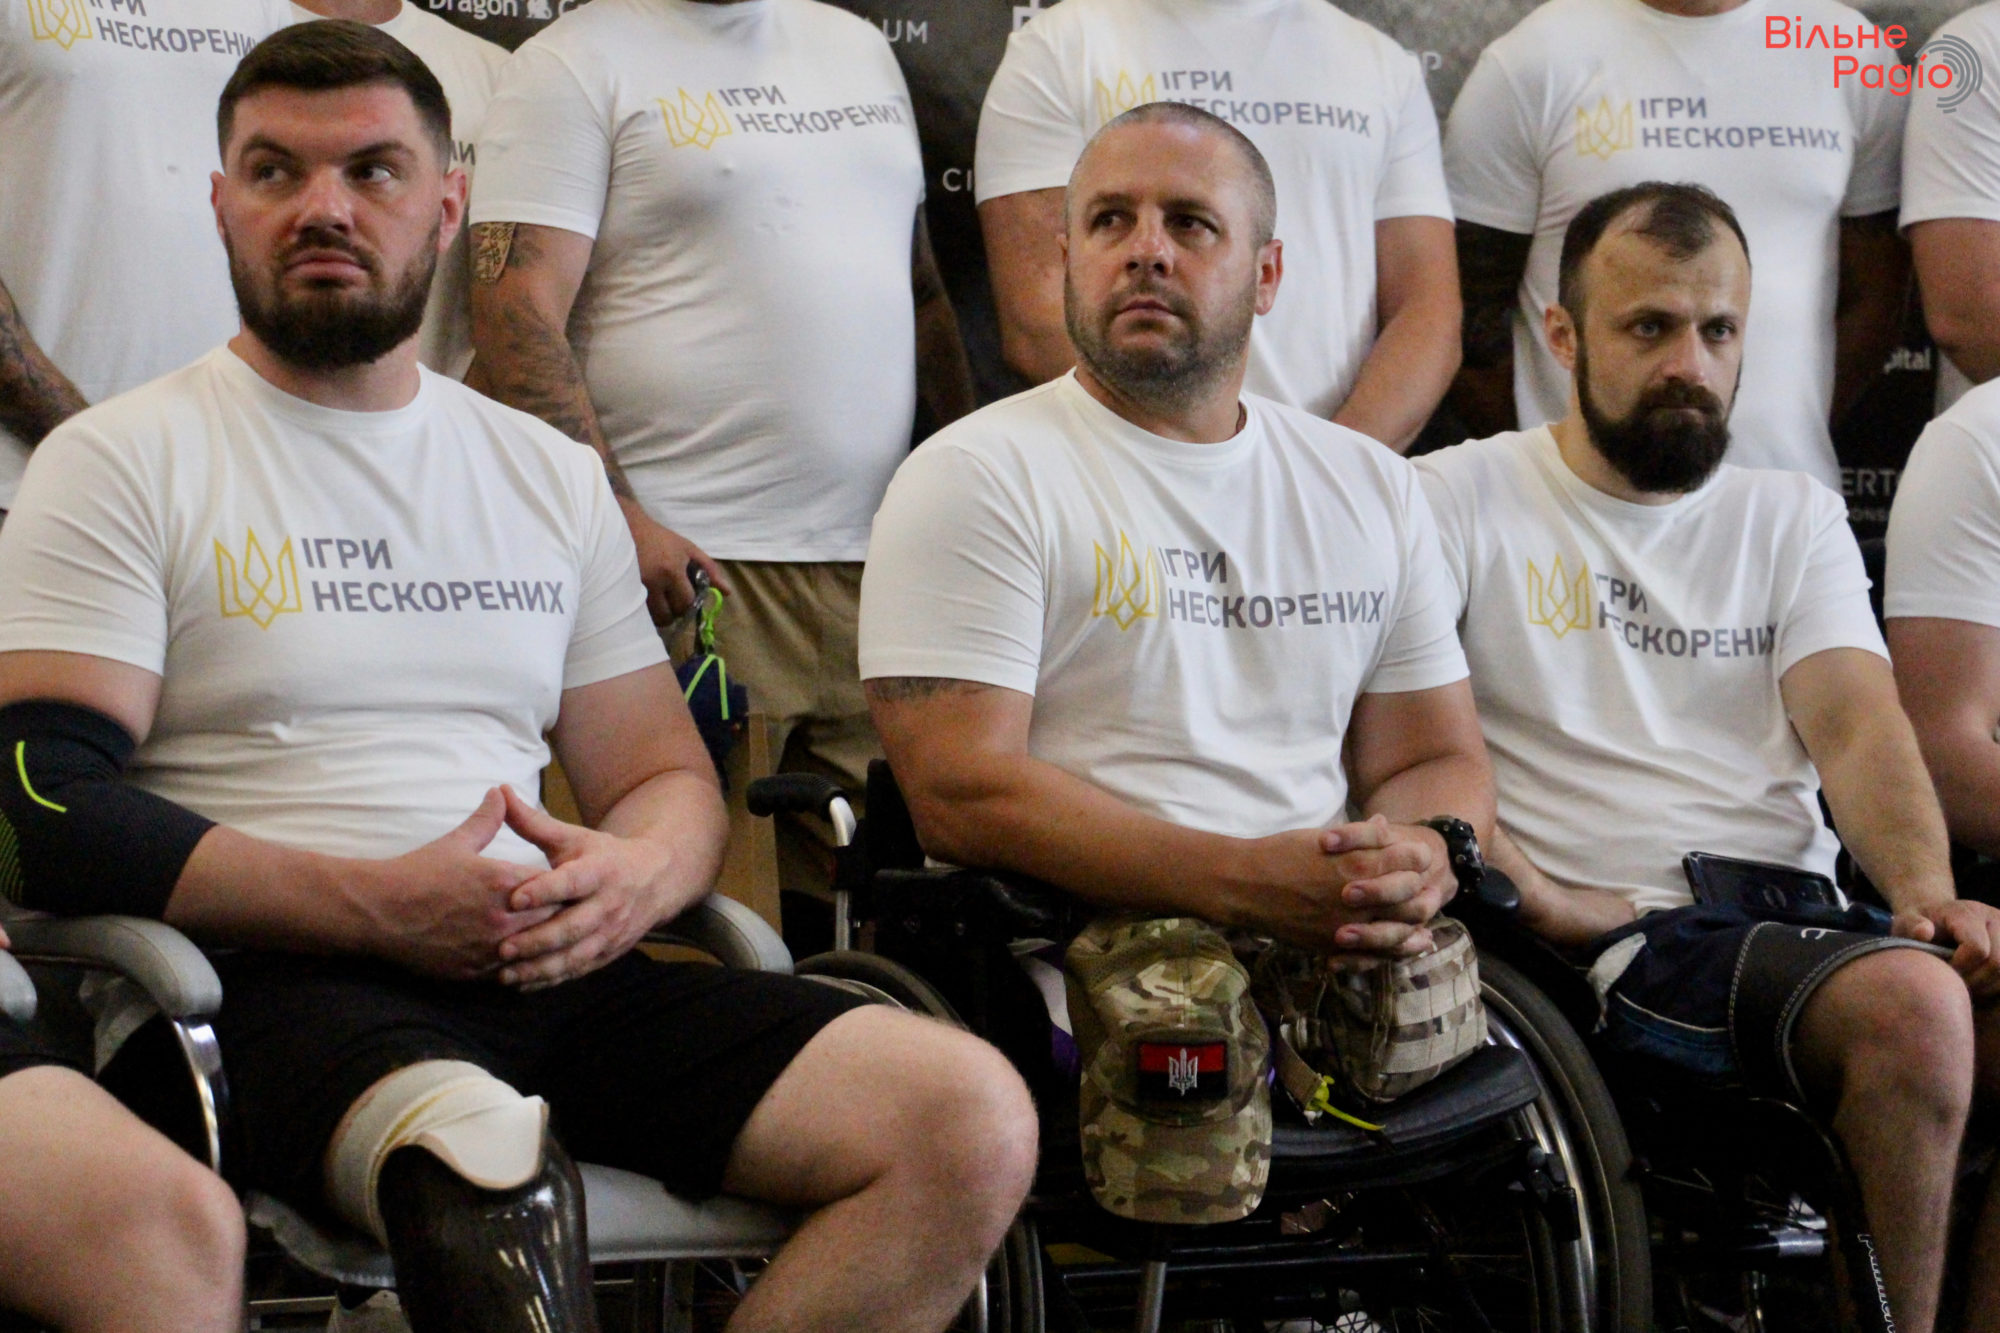 Спорт как реабилитация. Как украинские ветераны готовятся к Invictus Games и почему это важно (ФОТОРЕПОРТАЖ) 12